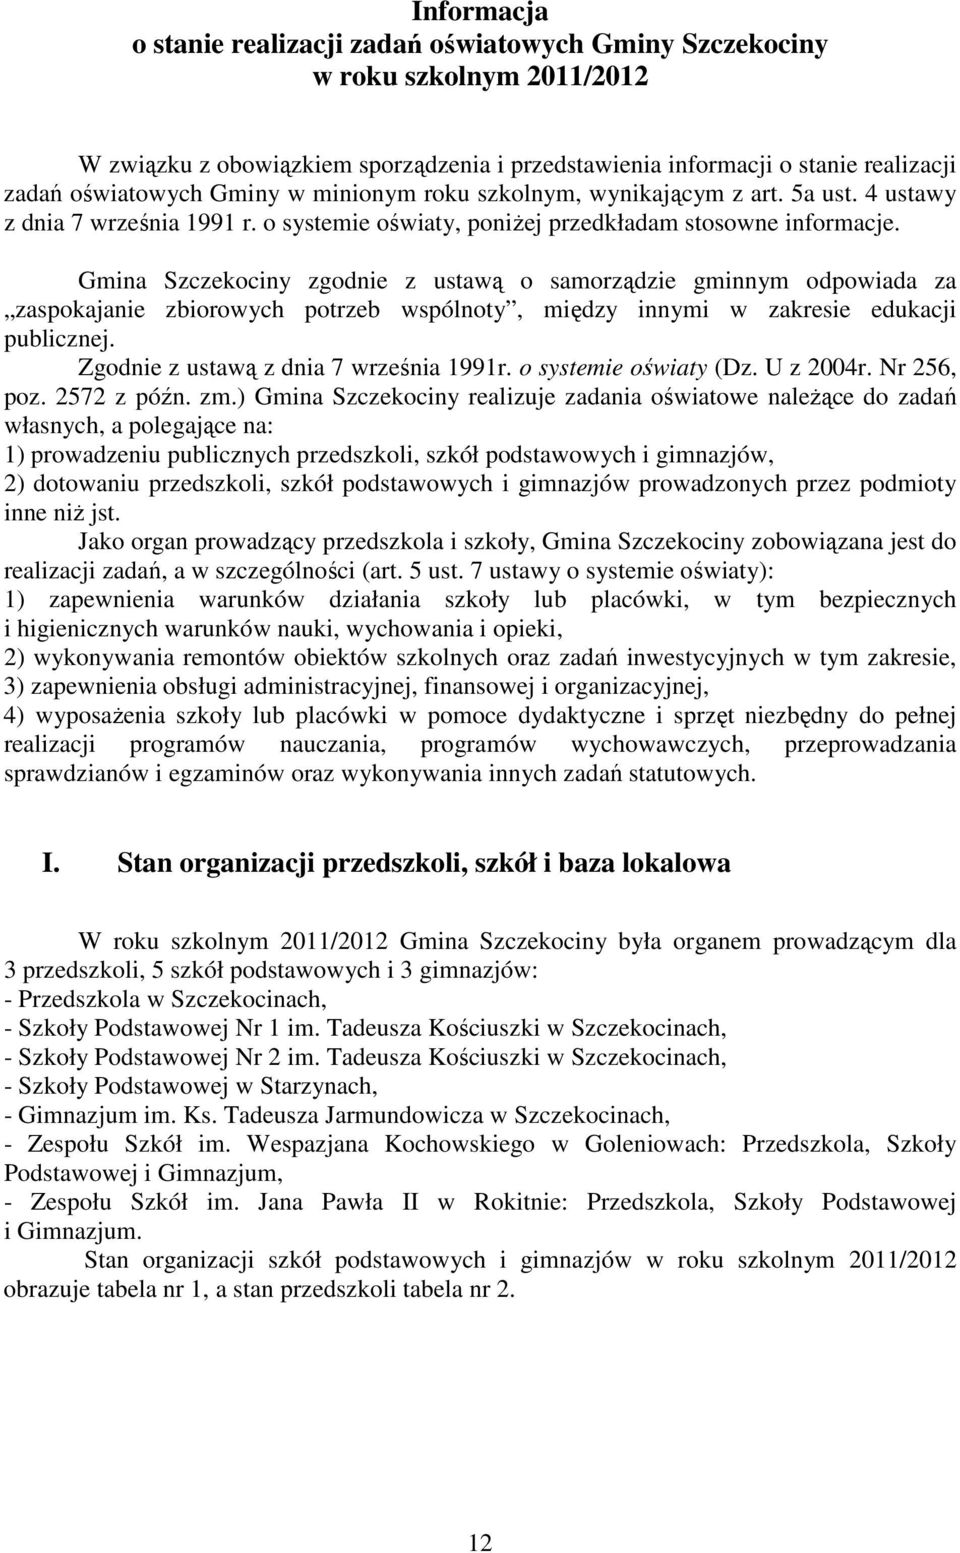 Gmina Szczekociny zgodnie z ustawą o samorządzie gminnym odpowiada za zaspokajanie zbiorowych potrzeb wspólnoty, między innymi w zakresie edukacji publicznej. Zgodnie z ustawą z dnia 7 września 1991r.